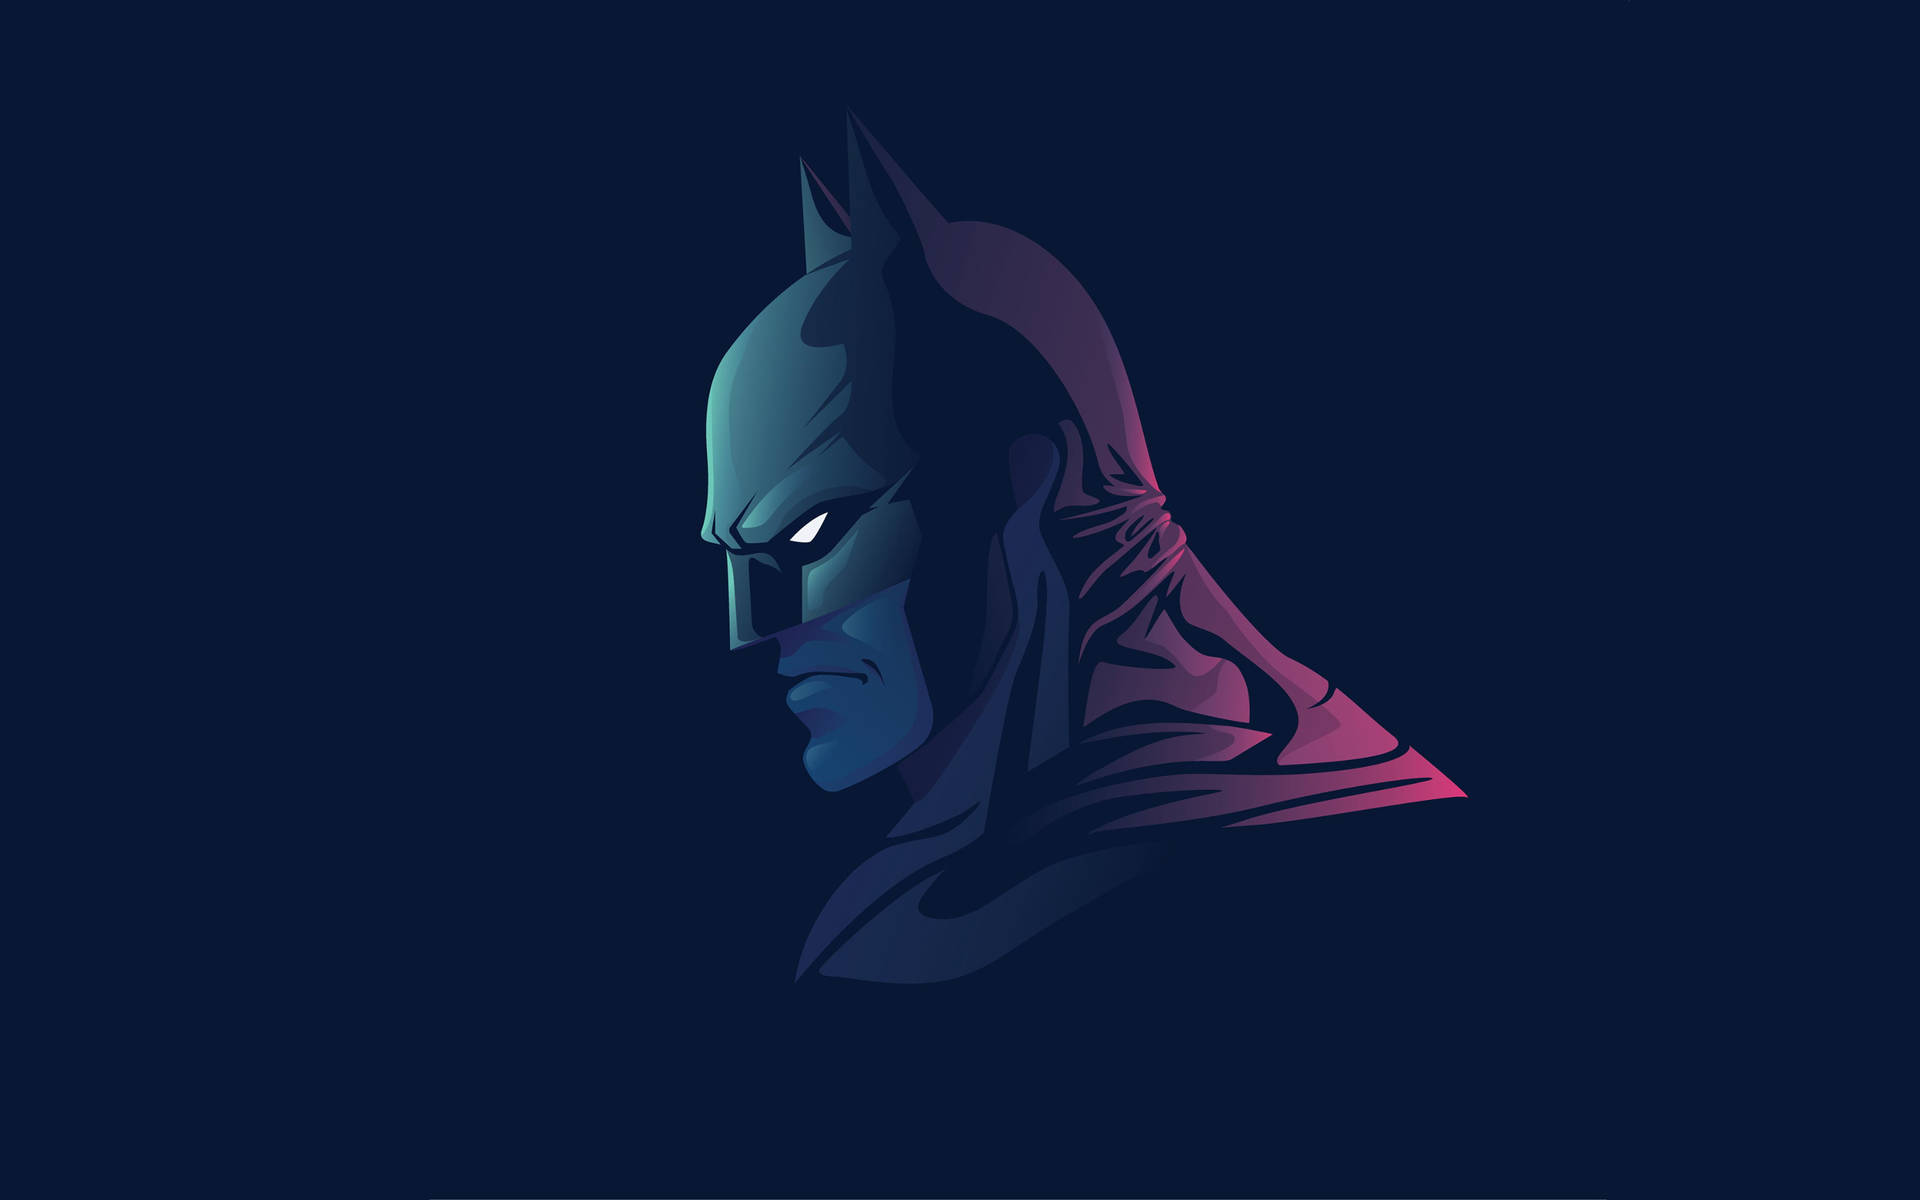 Eljusticiero De Gotham, Batman Fondo de pantalla